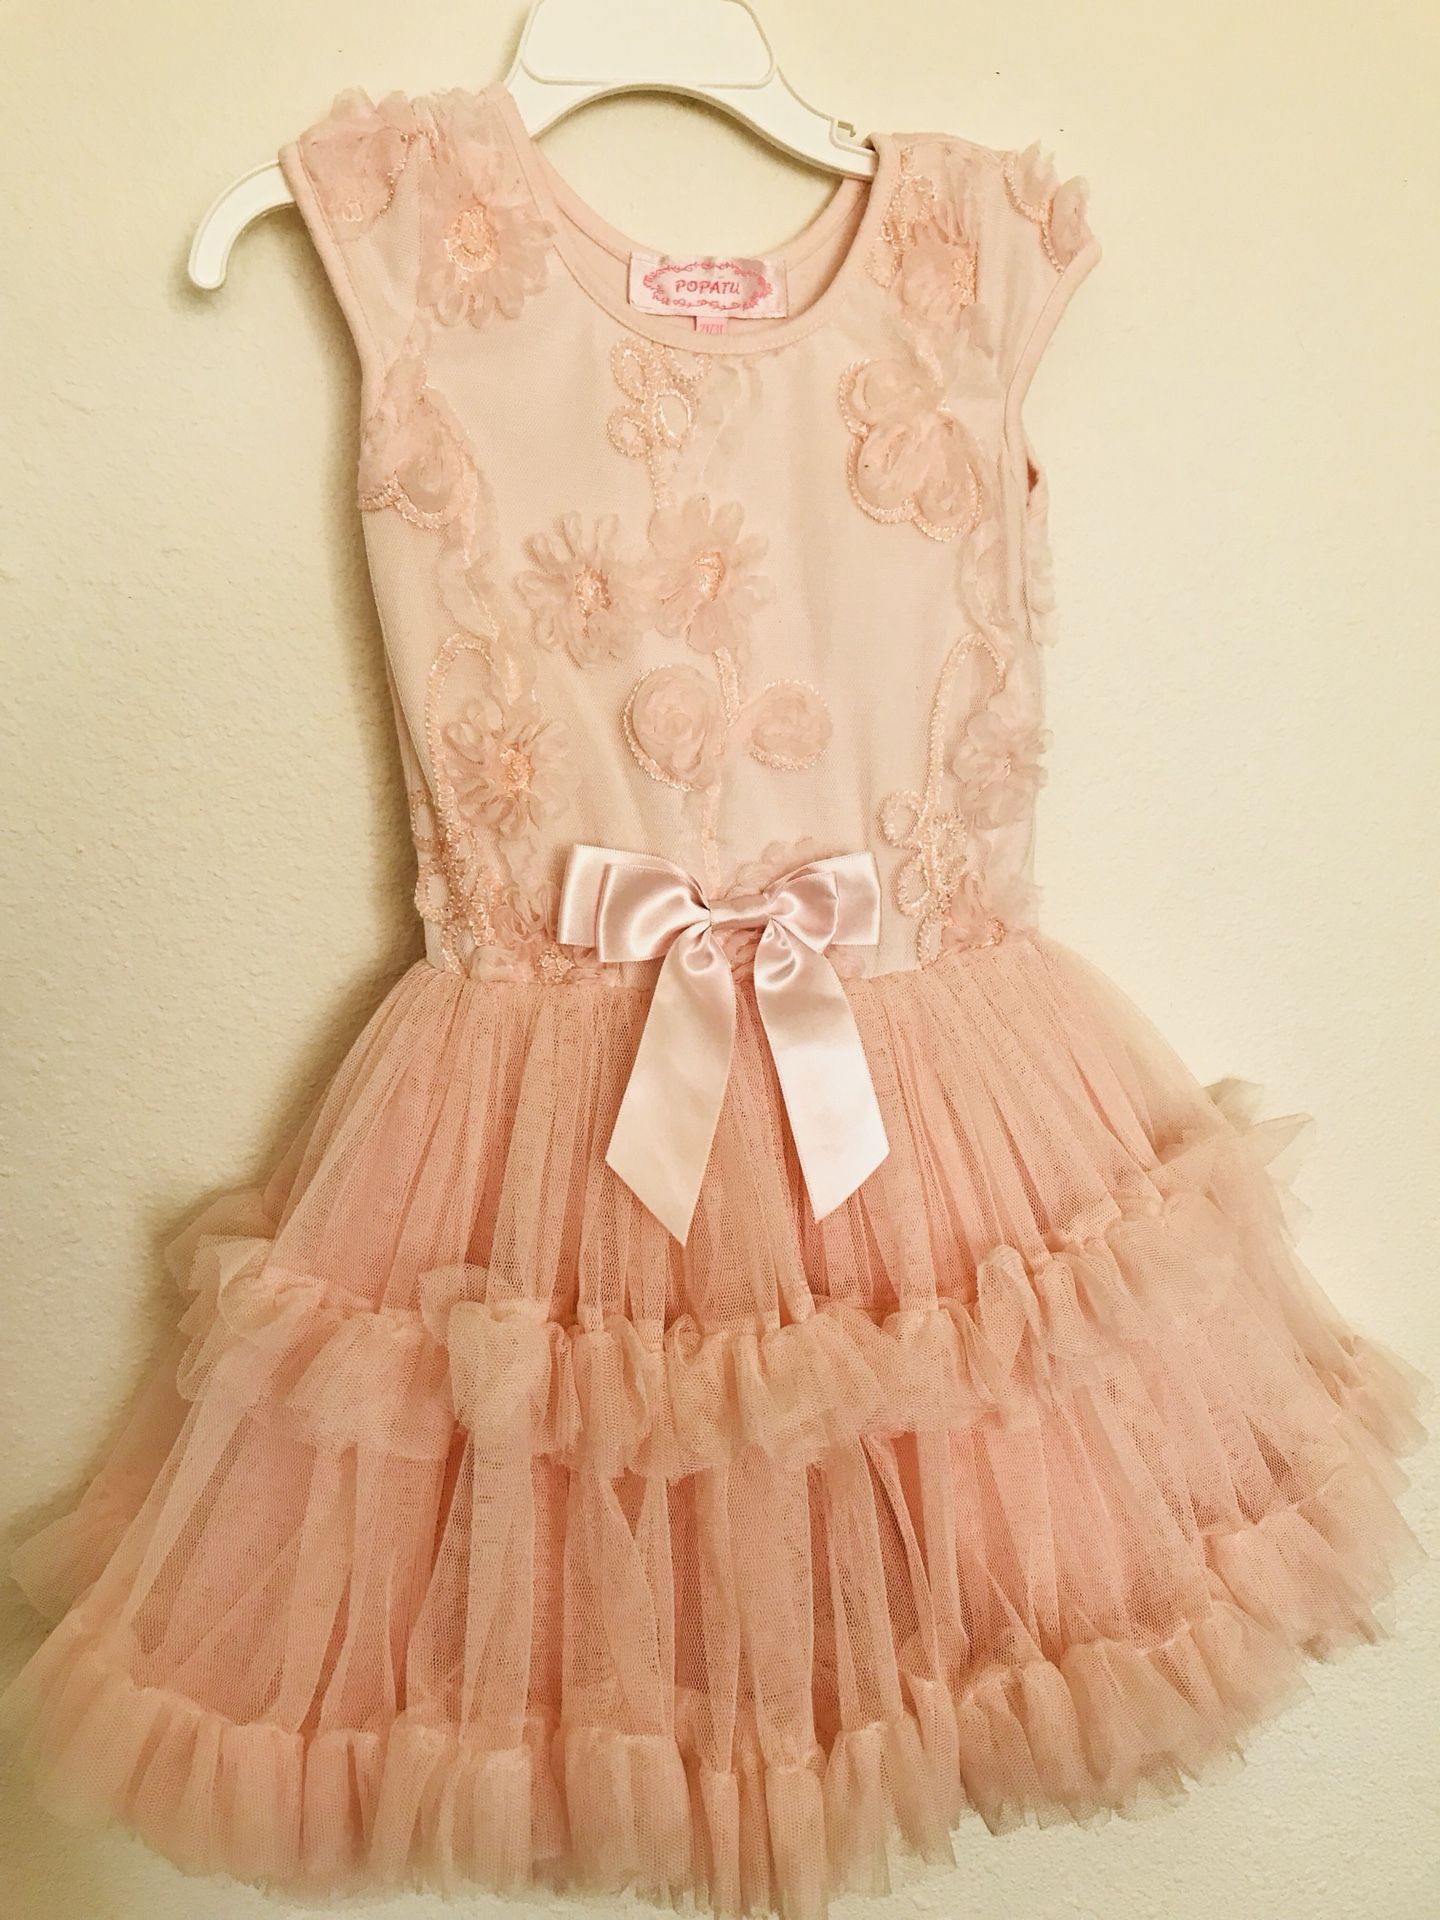 Toddler girl dress